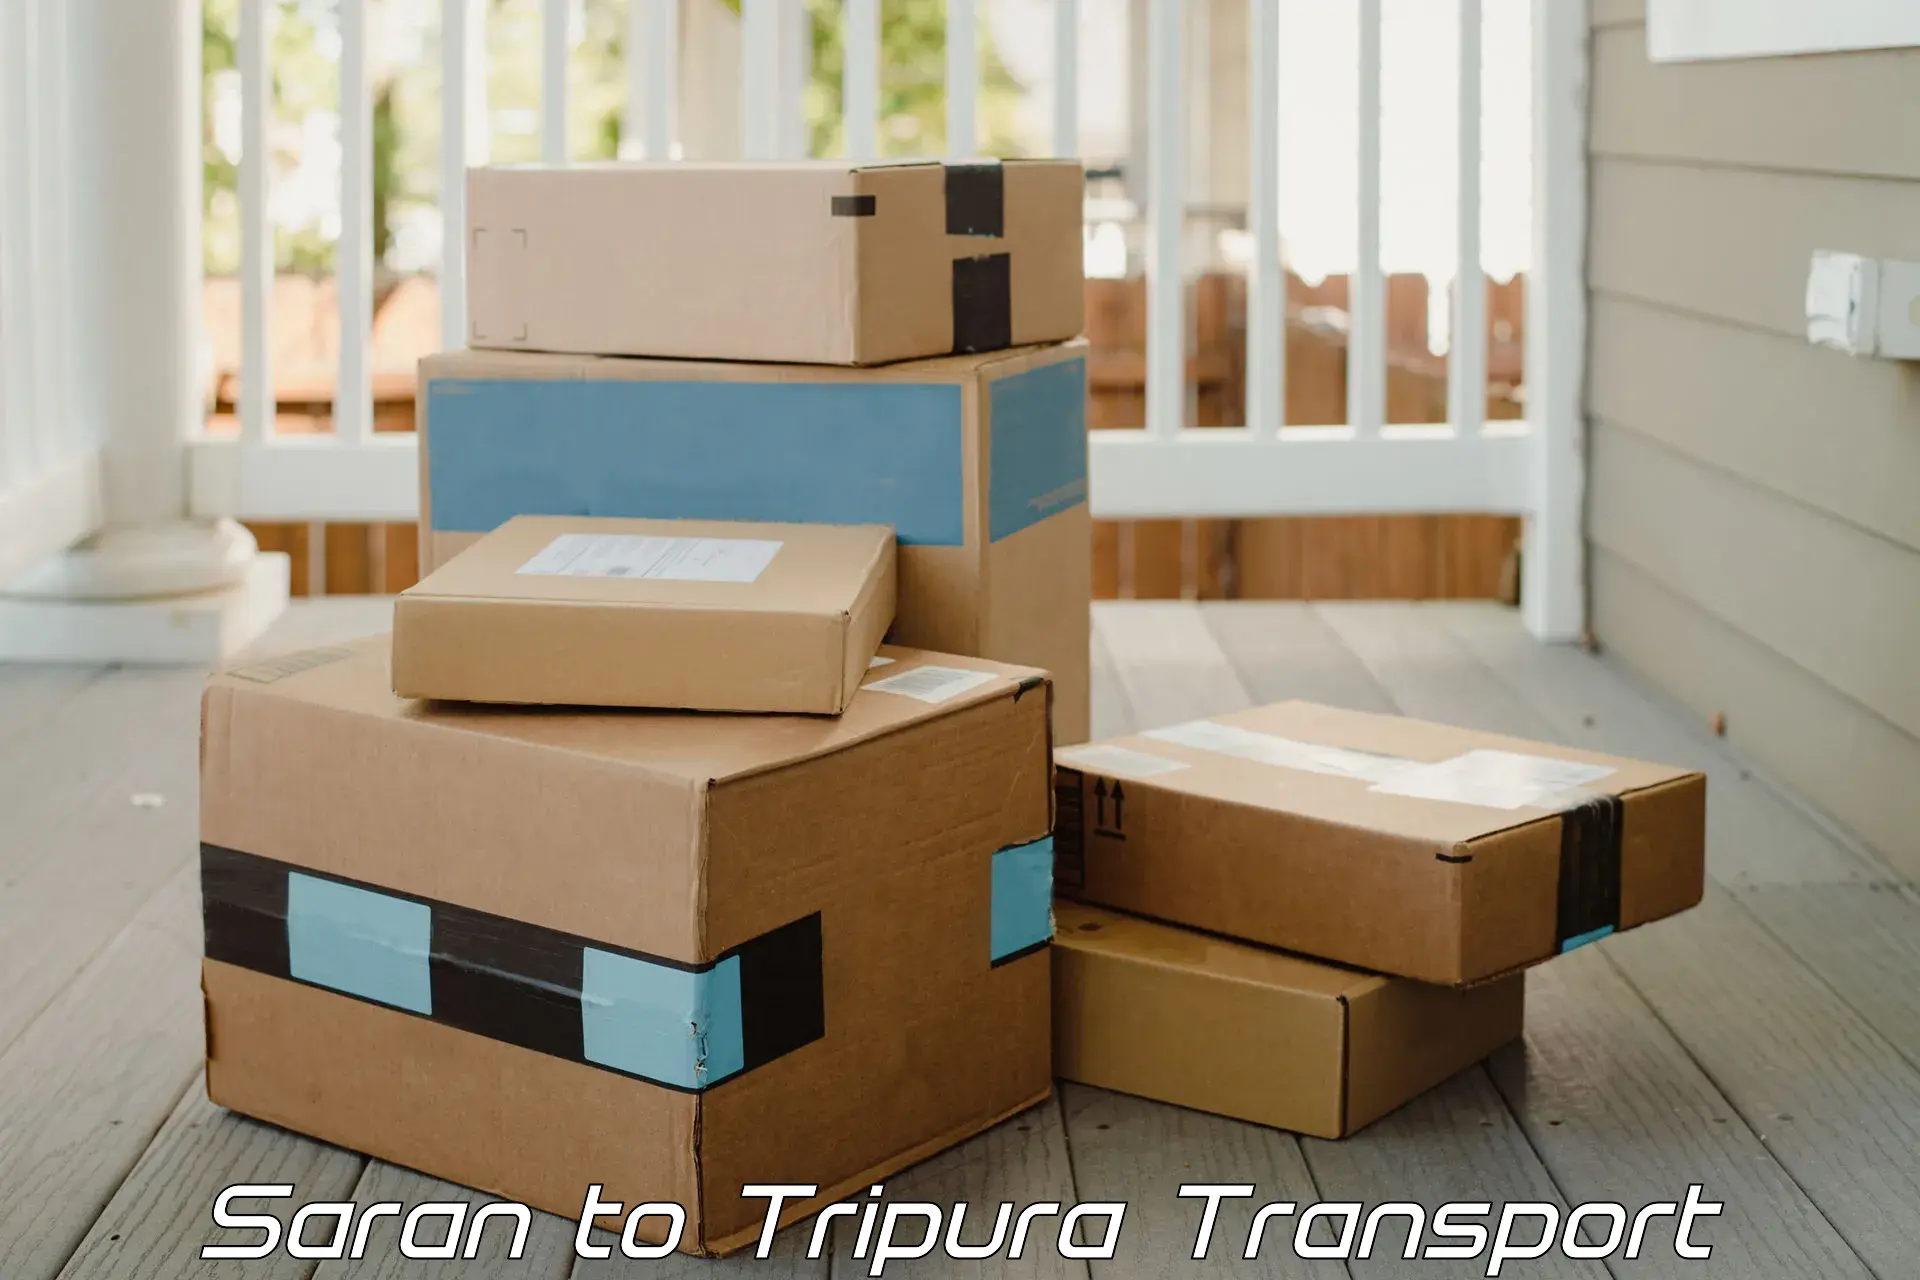 Shipping partner Saran to West Tripura